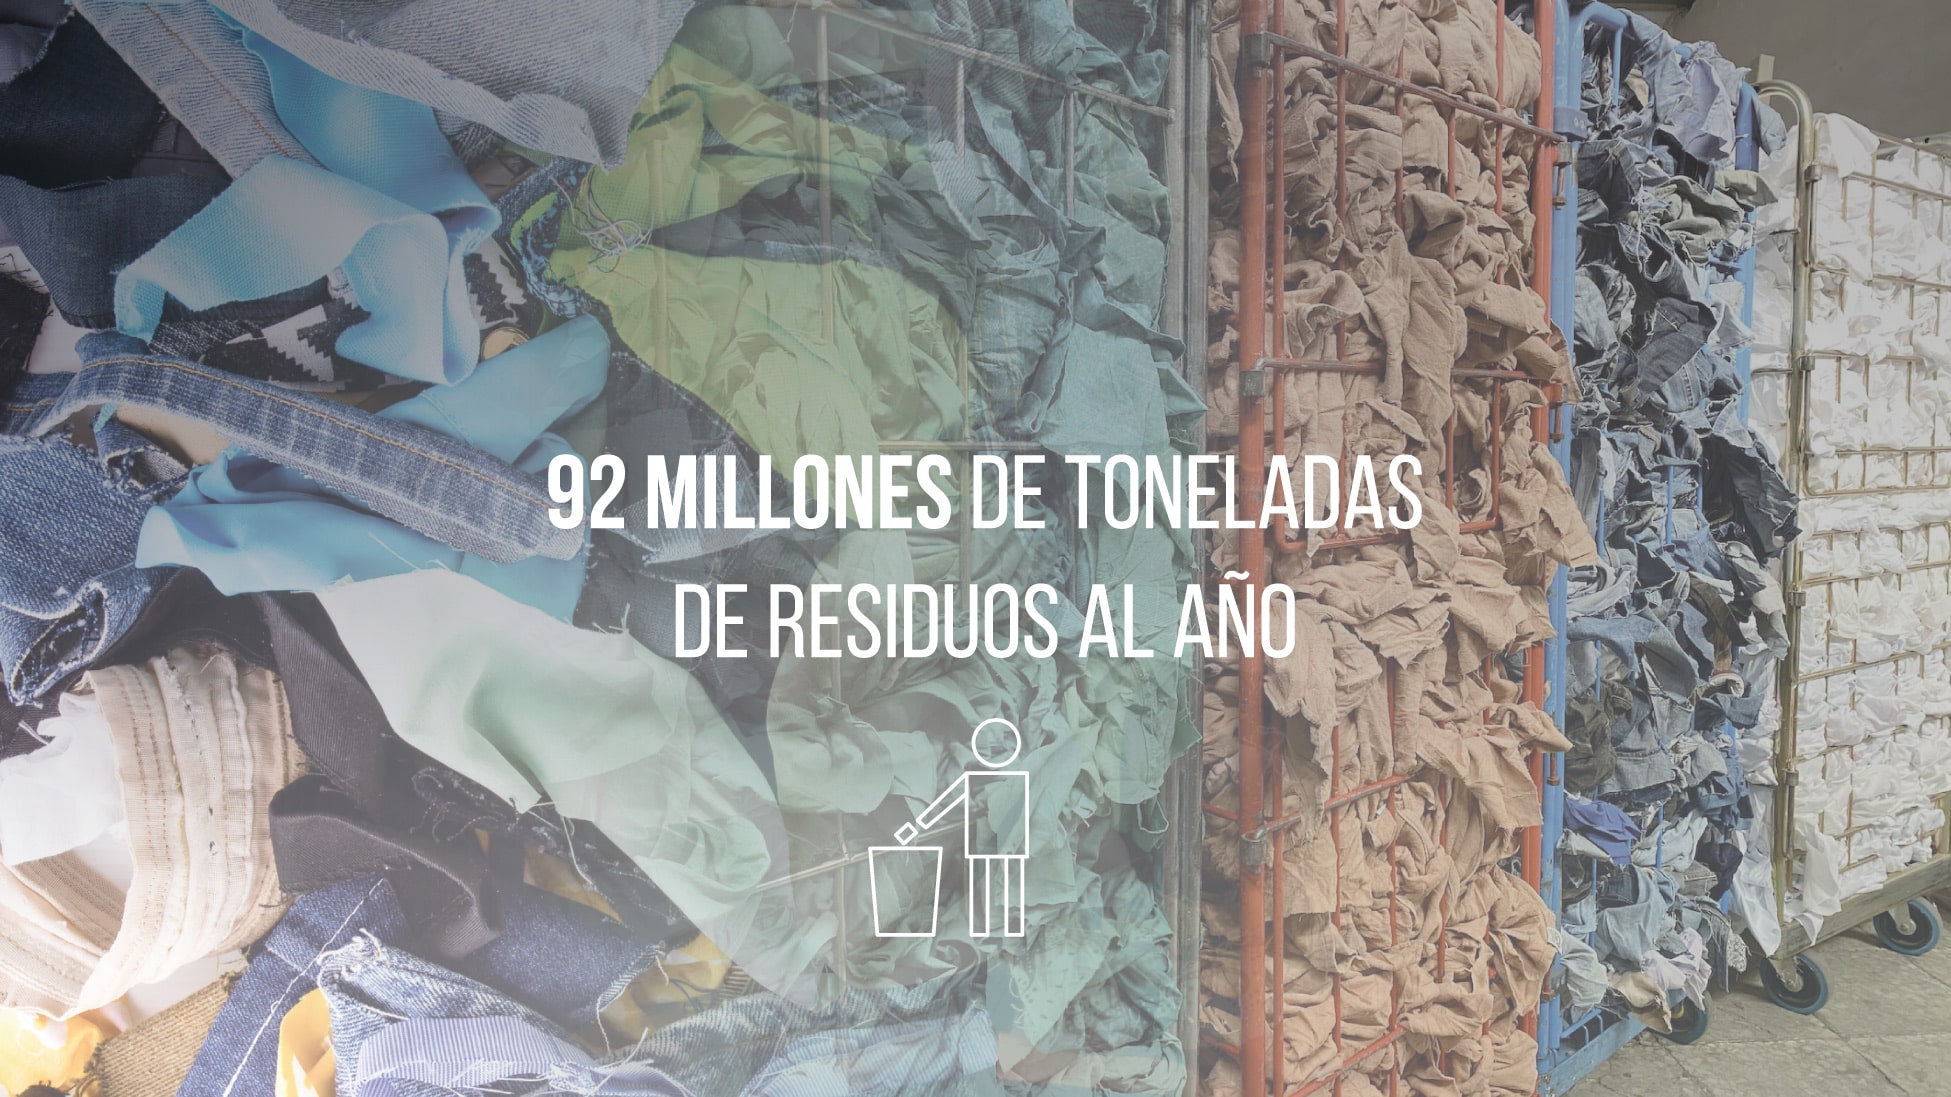 la industria textil genera 92 millones de toneladas de residuos al año